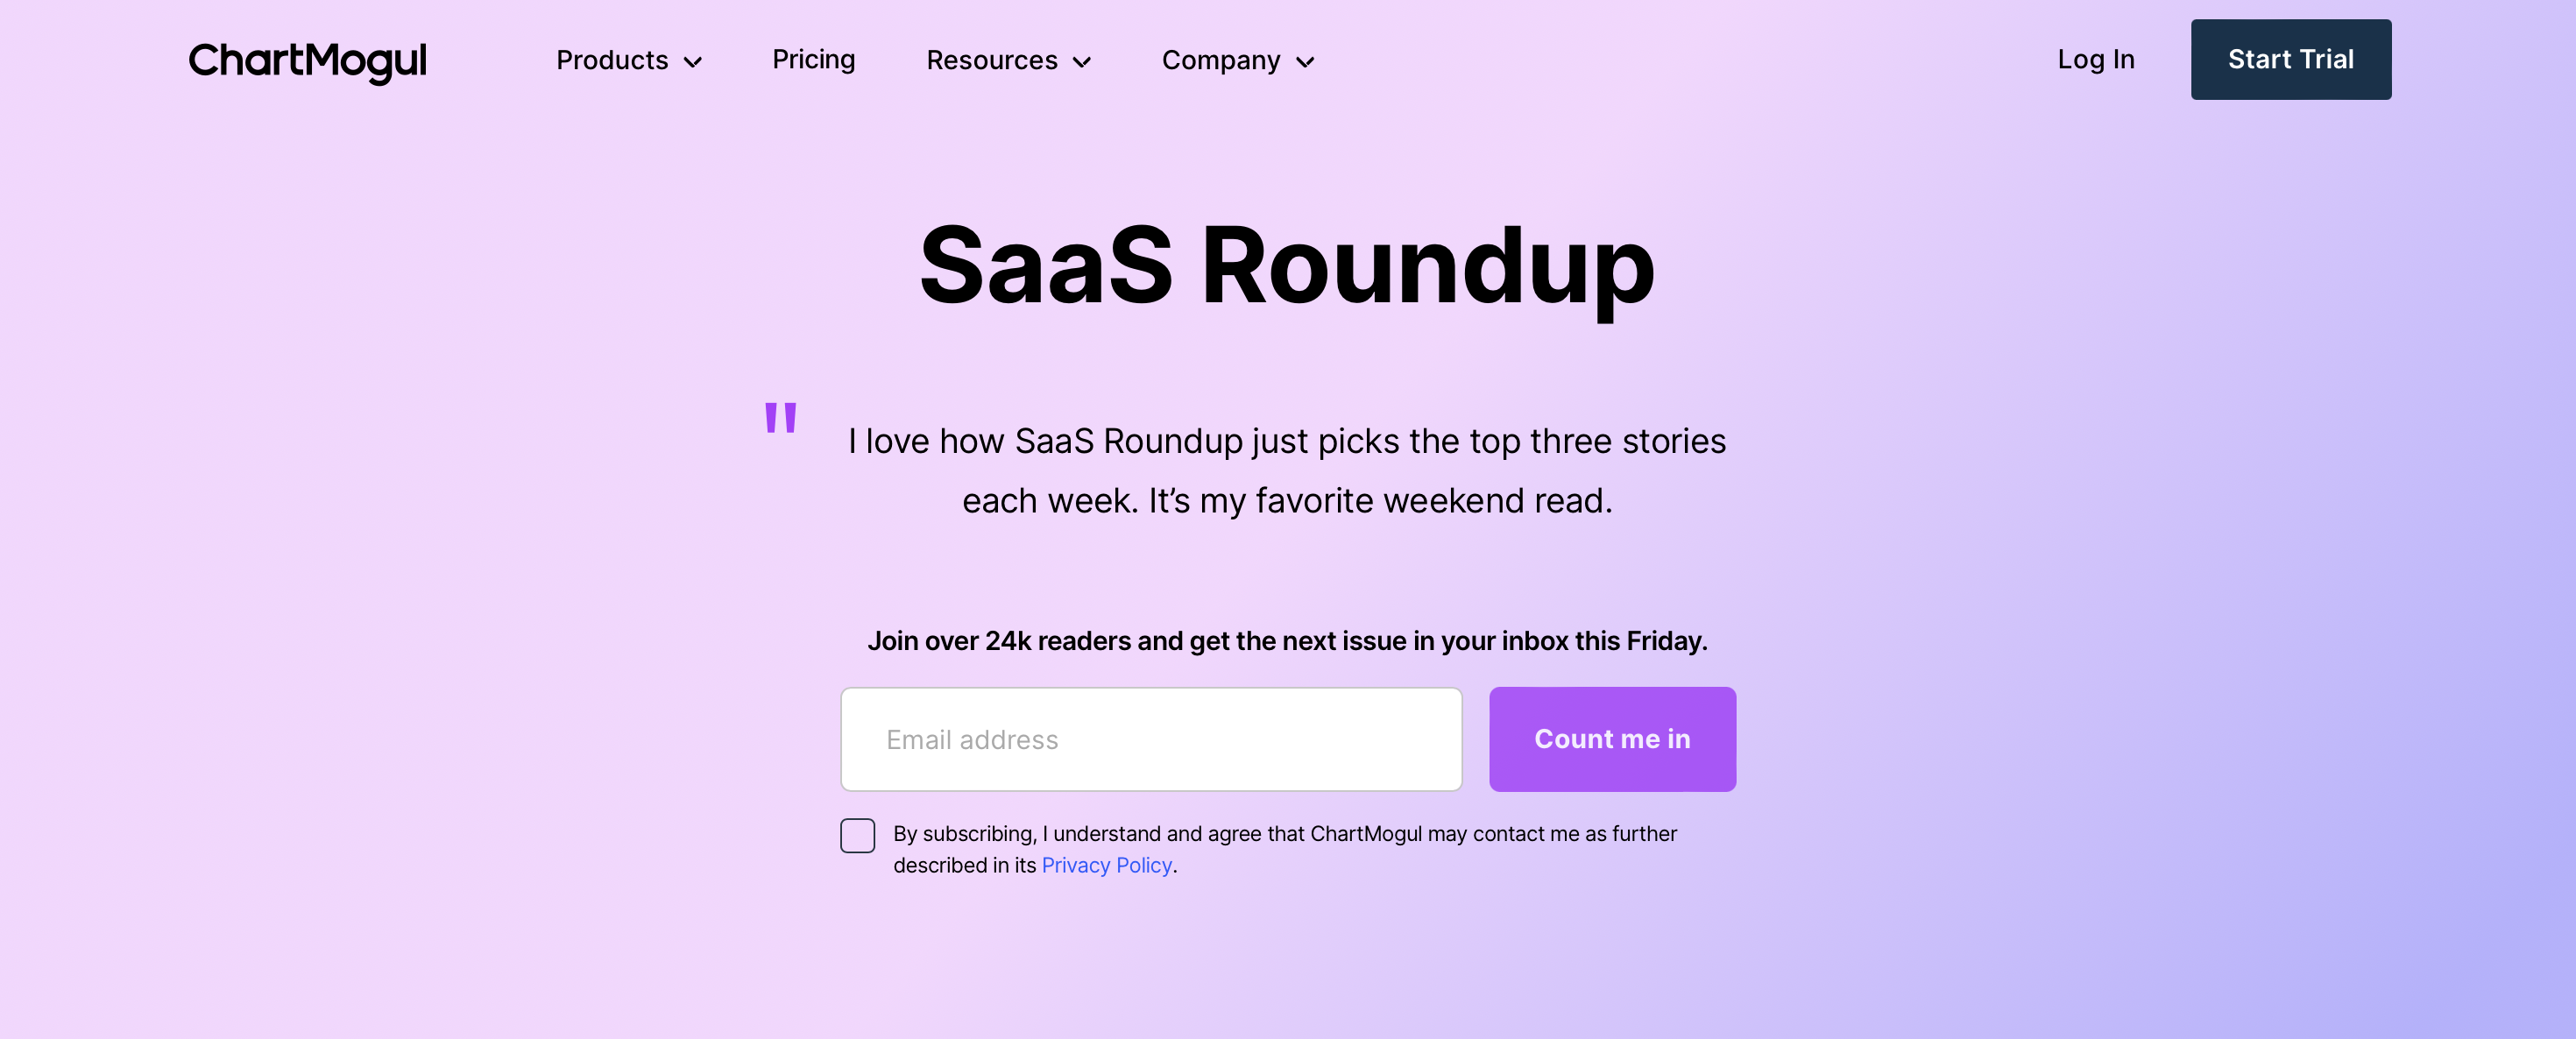 SaaS Roundup by ChartMogul